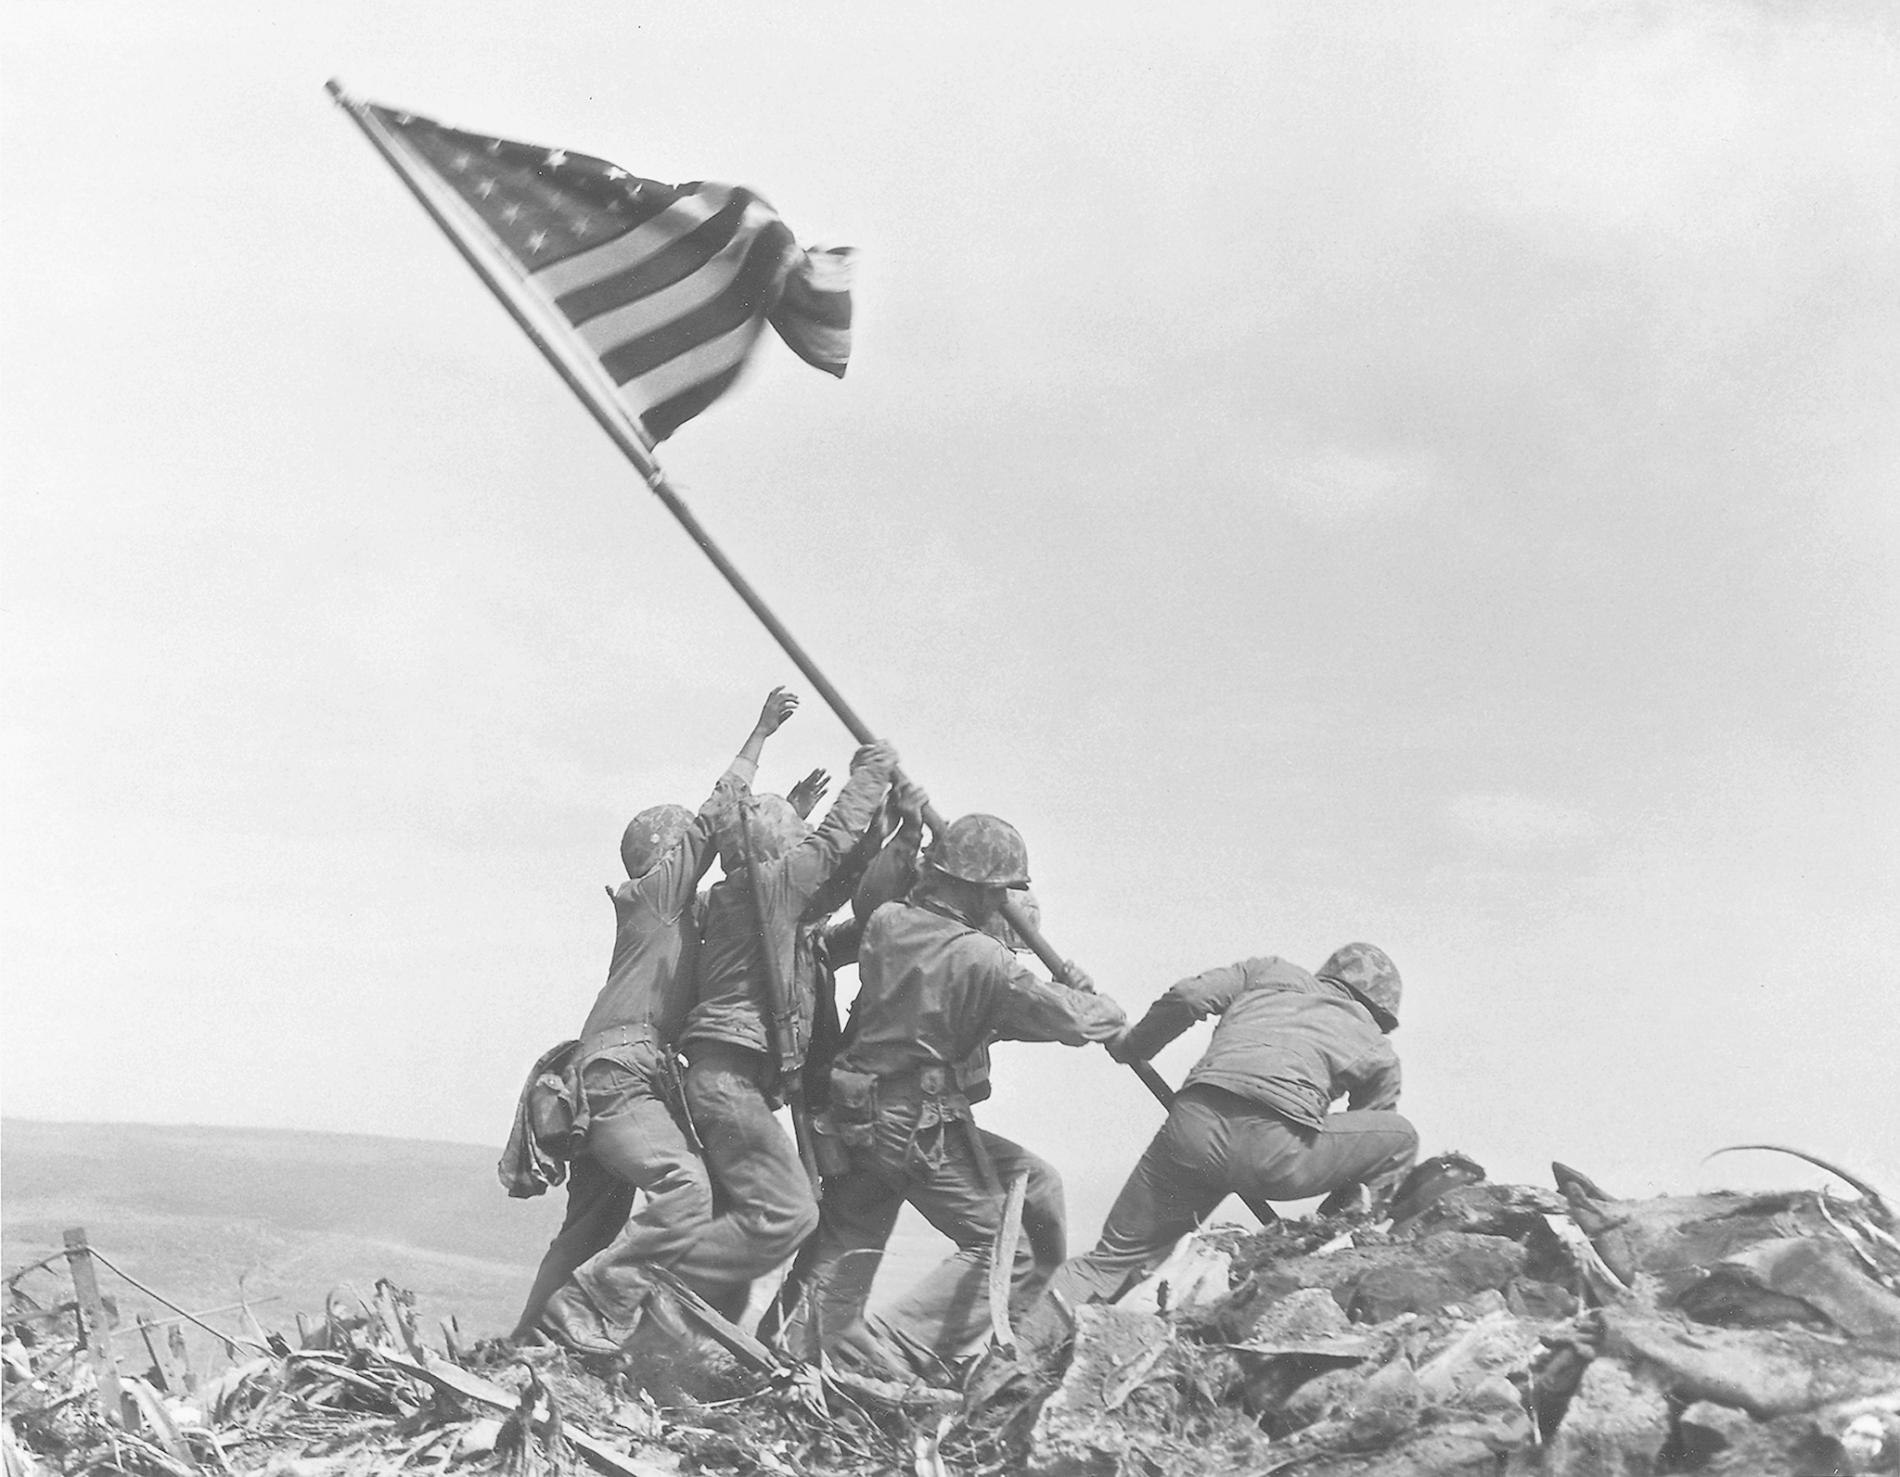 Snimljena jedna od najpoznatijih ratnih fotografija u povijesti – 1945.